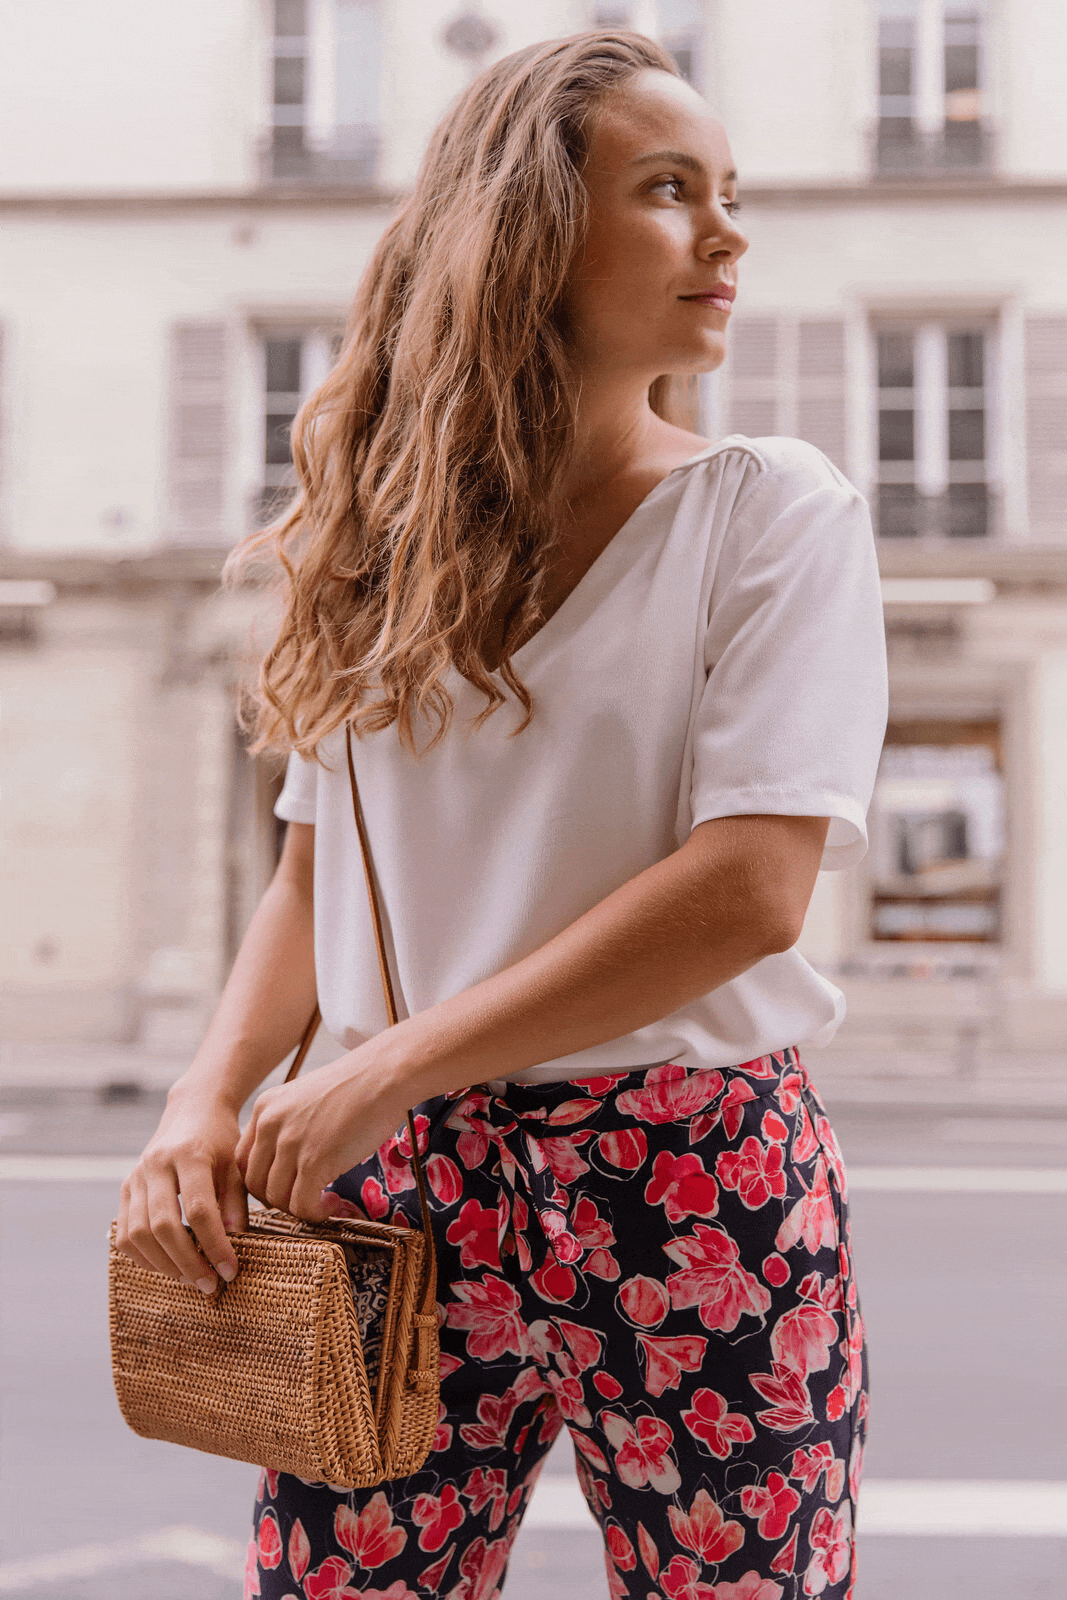 Nêge Paris – Pantalon de pyjama Encore un Soir avec un fond bleu nuit orné de détails floraux et fruités dans des coloris roses et rouges porté avec un top blanc